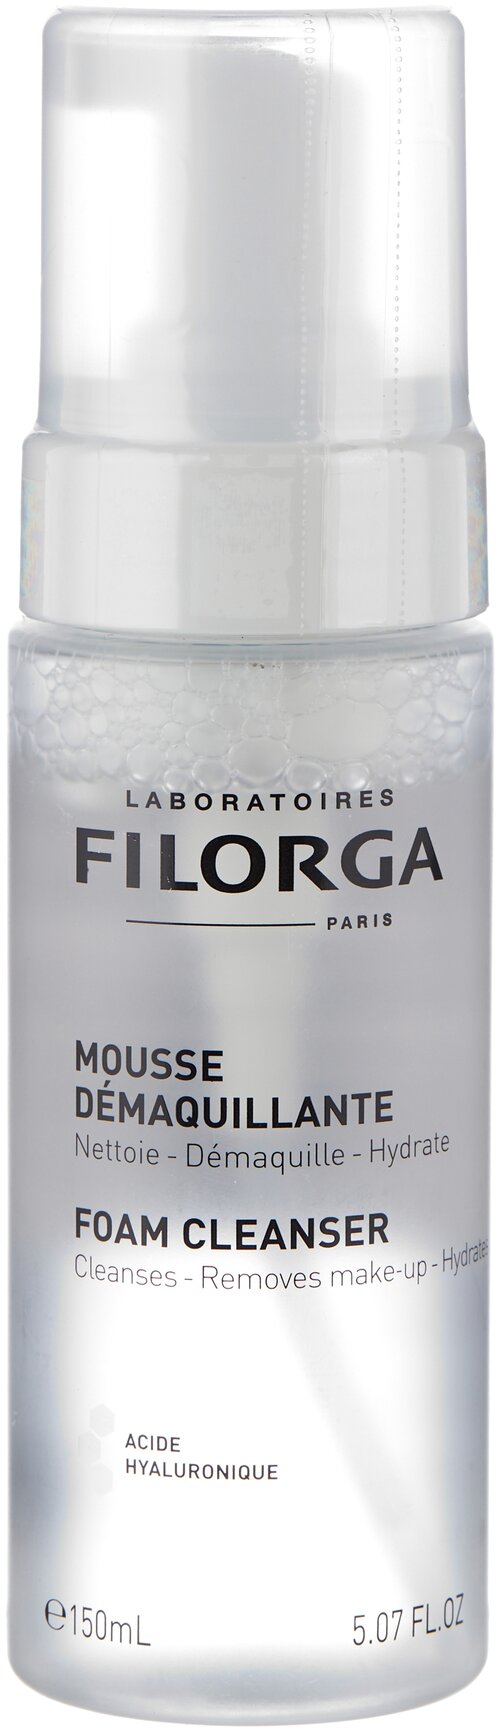 Filorga увлажняющий мусс для снятия макияжа Foam Cleanser, 150 мл, 150 г